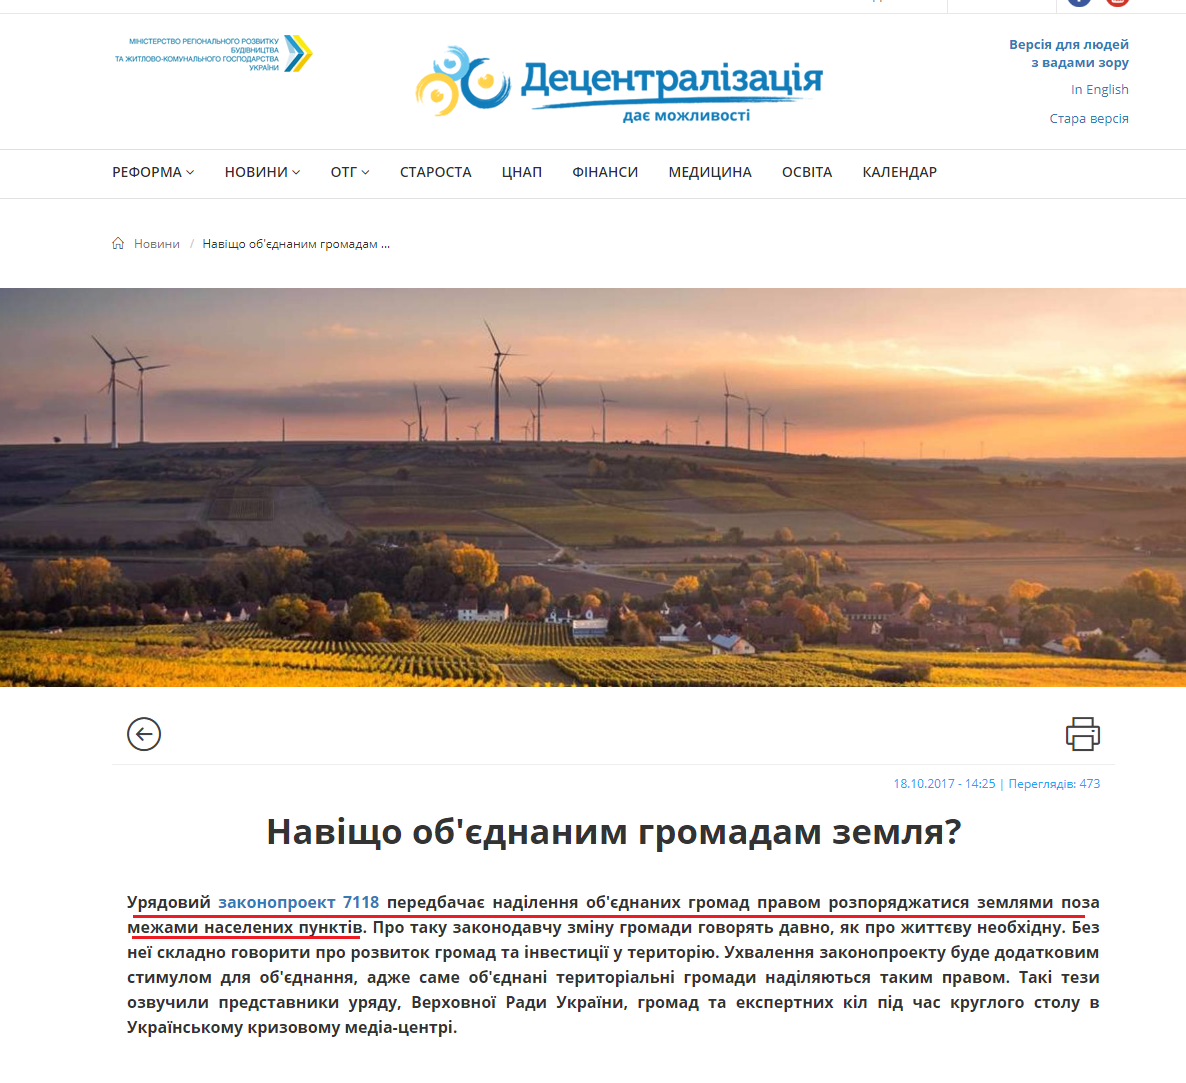 http://decentralization.gov.ua/news/7219